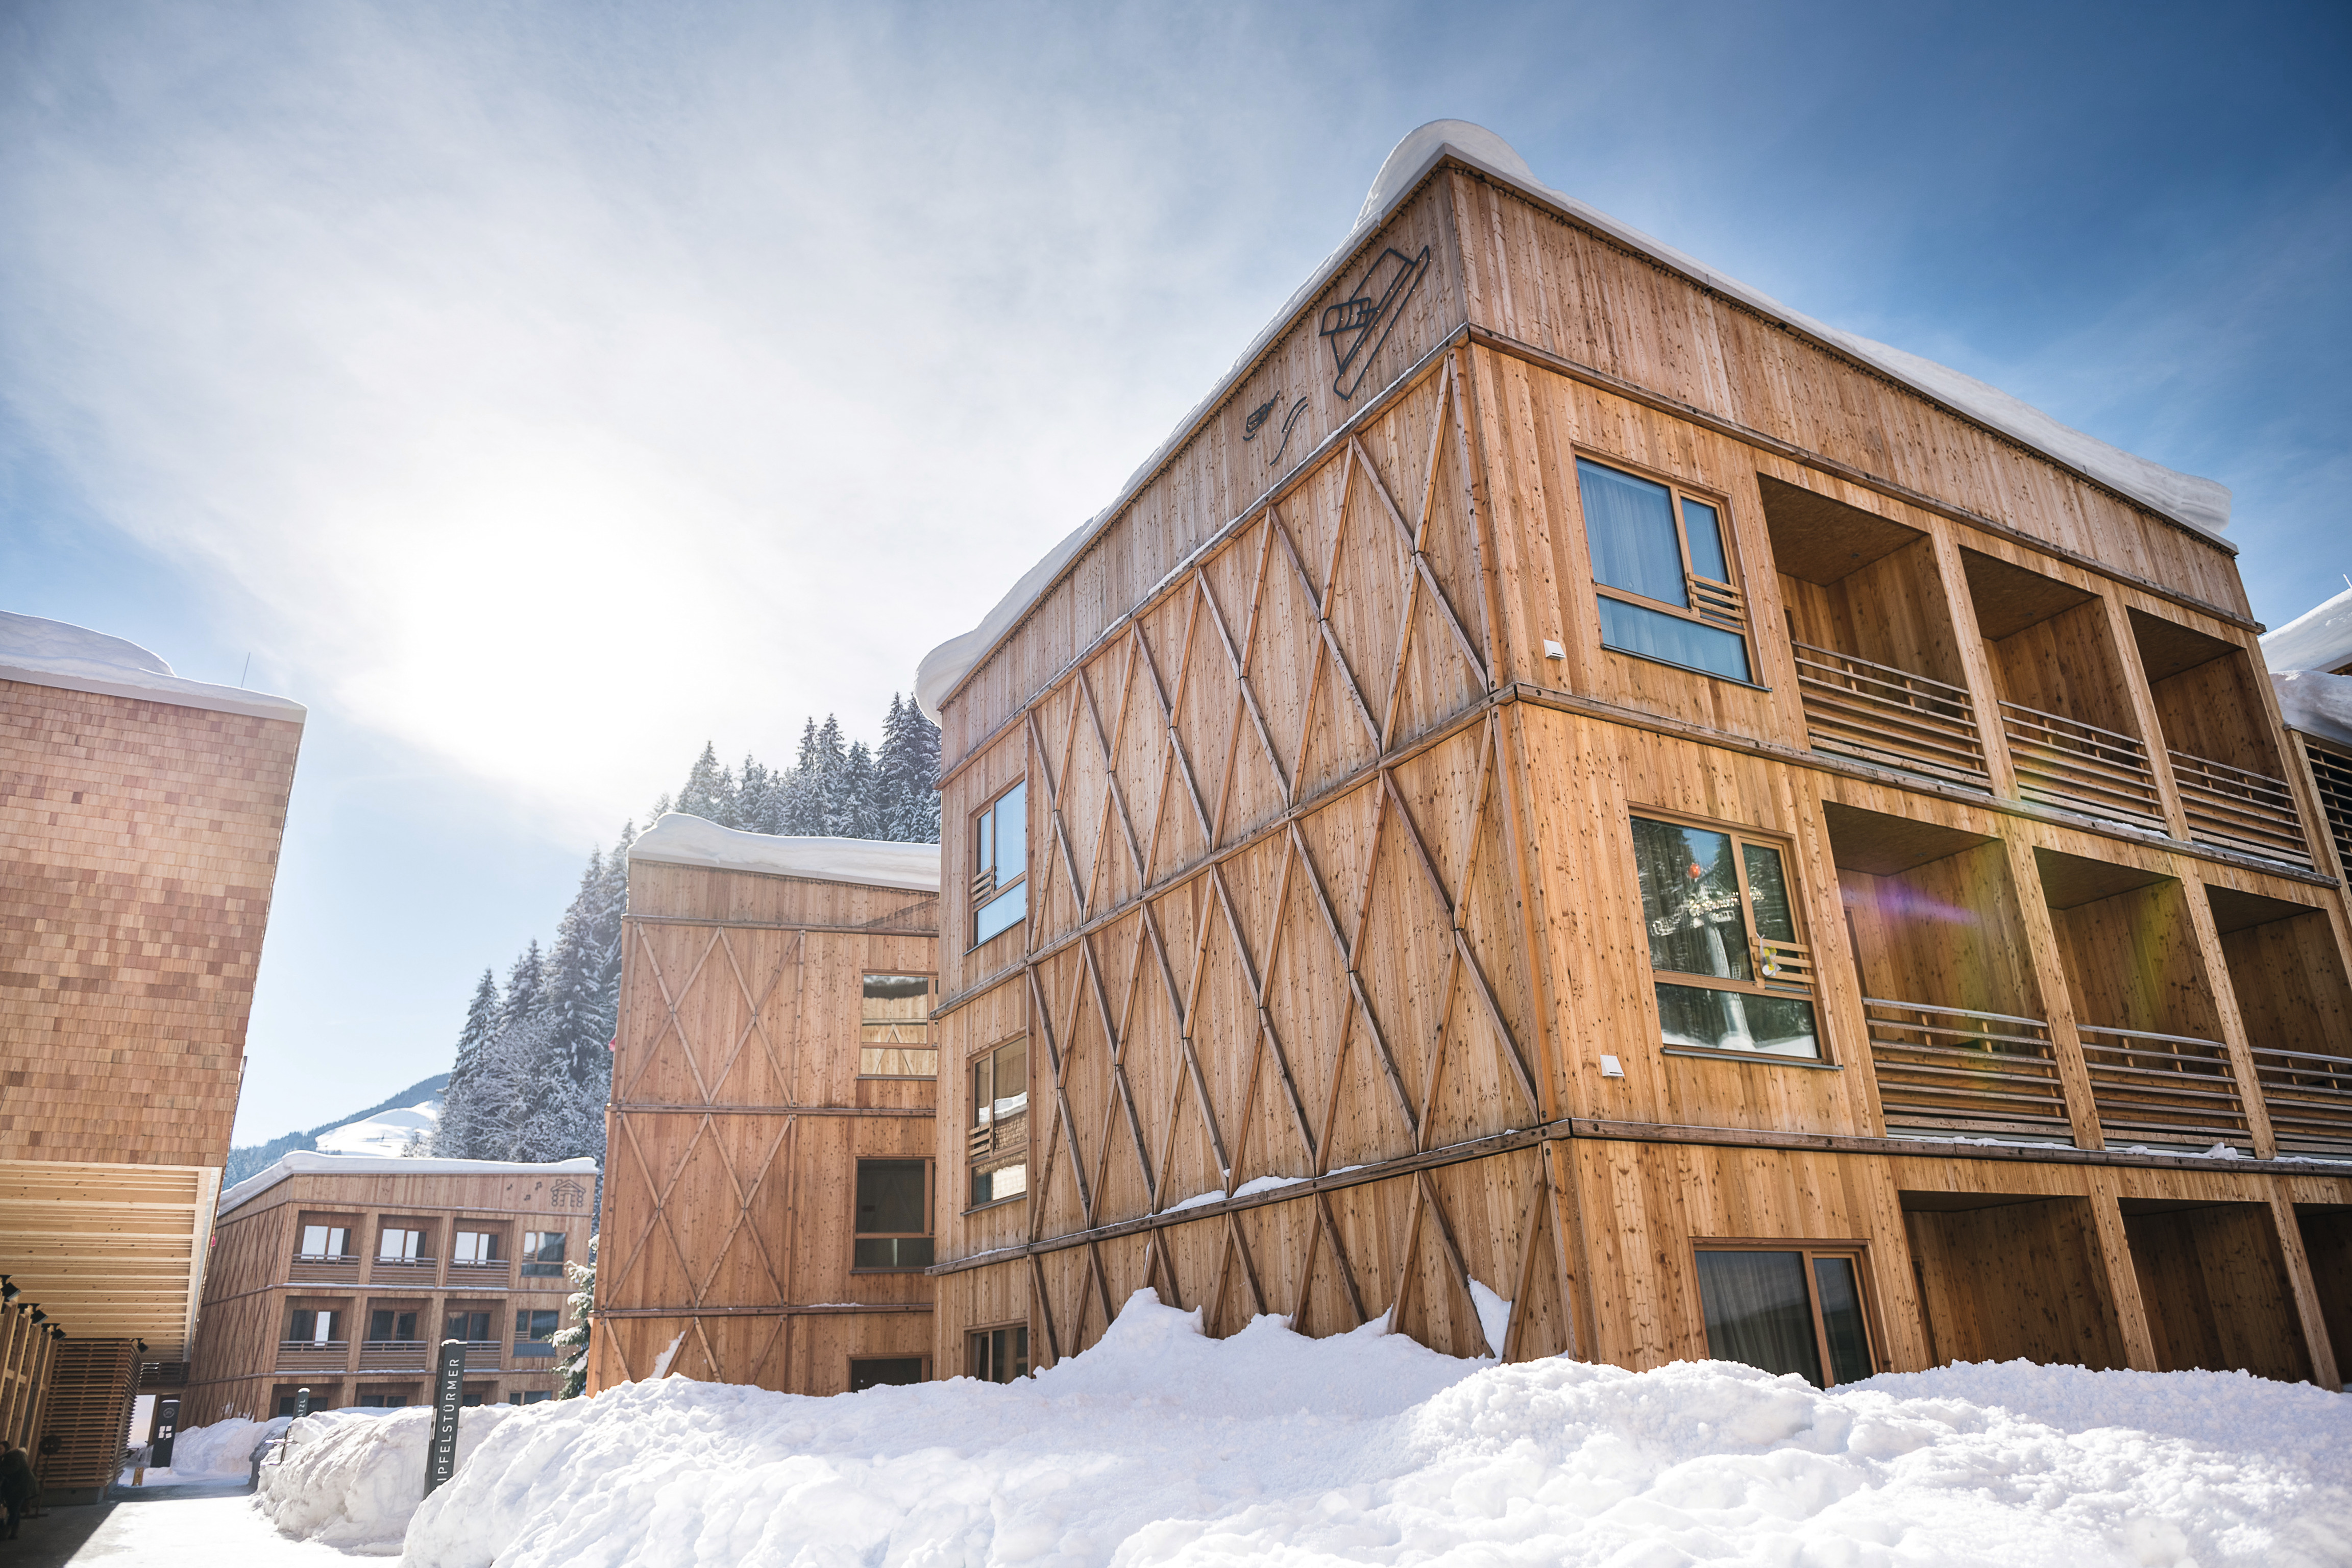 Case study project Tirol Lodge Ellmau